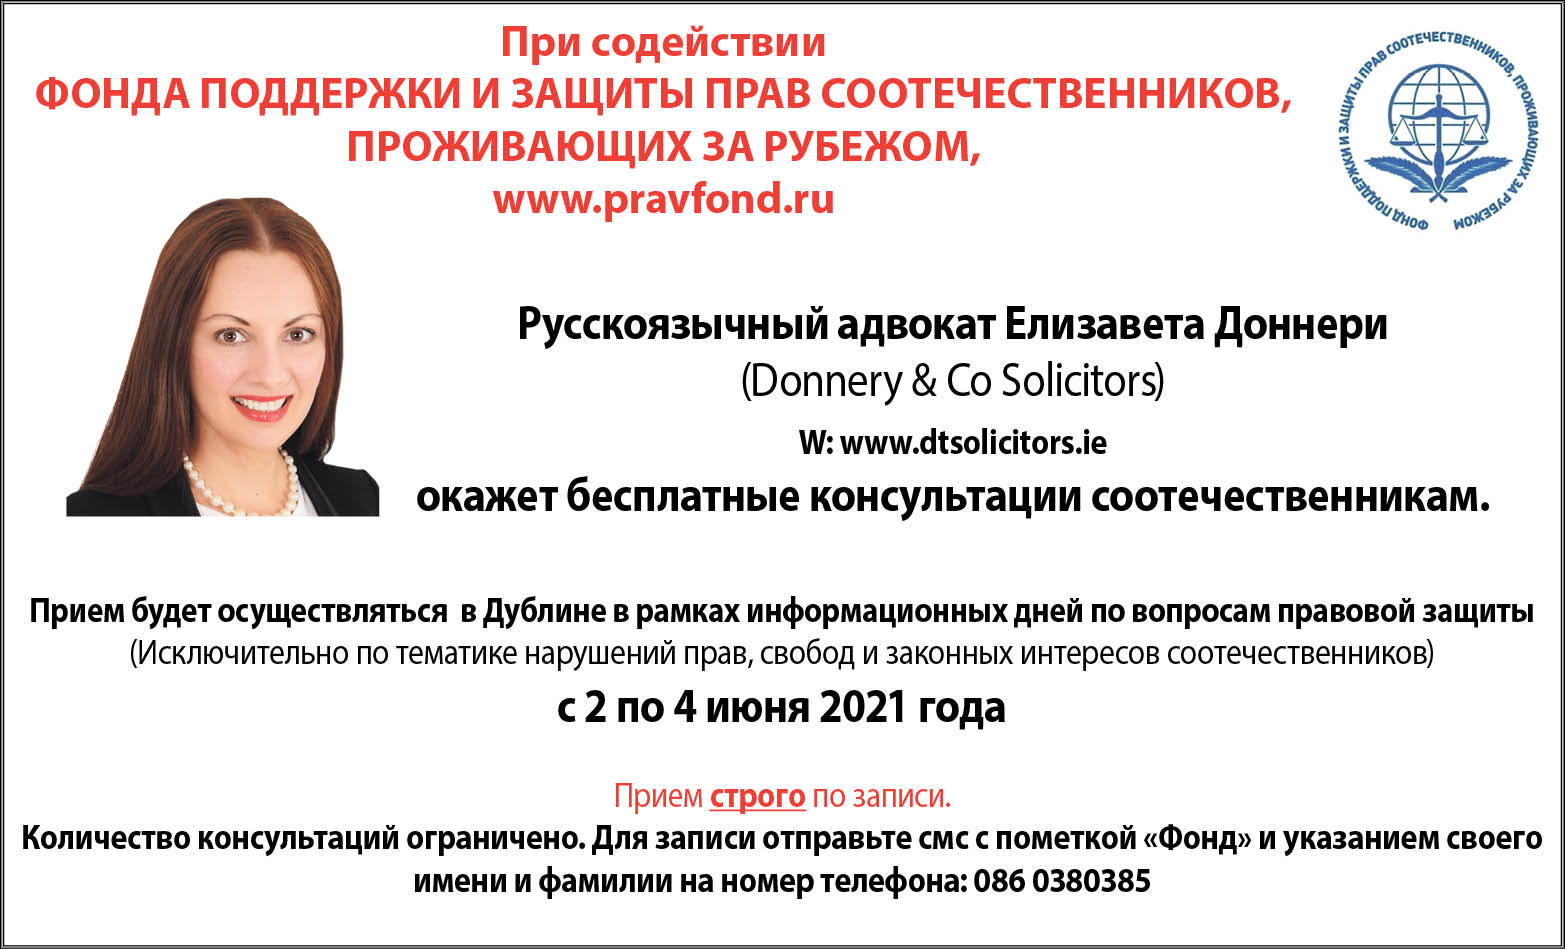 Русскоязычный адвокат Елизавета Доннери предоставит бесплатные консультации соотечественникам